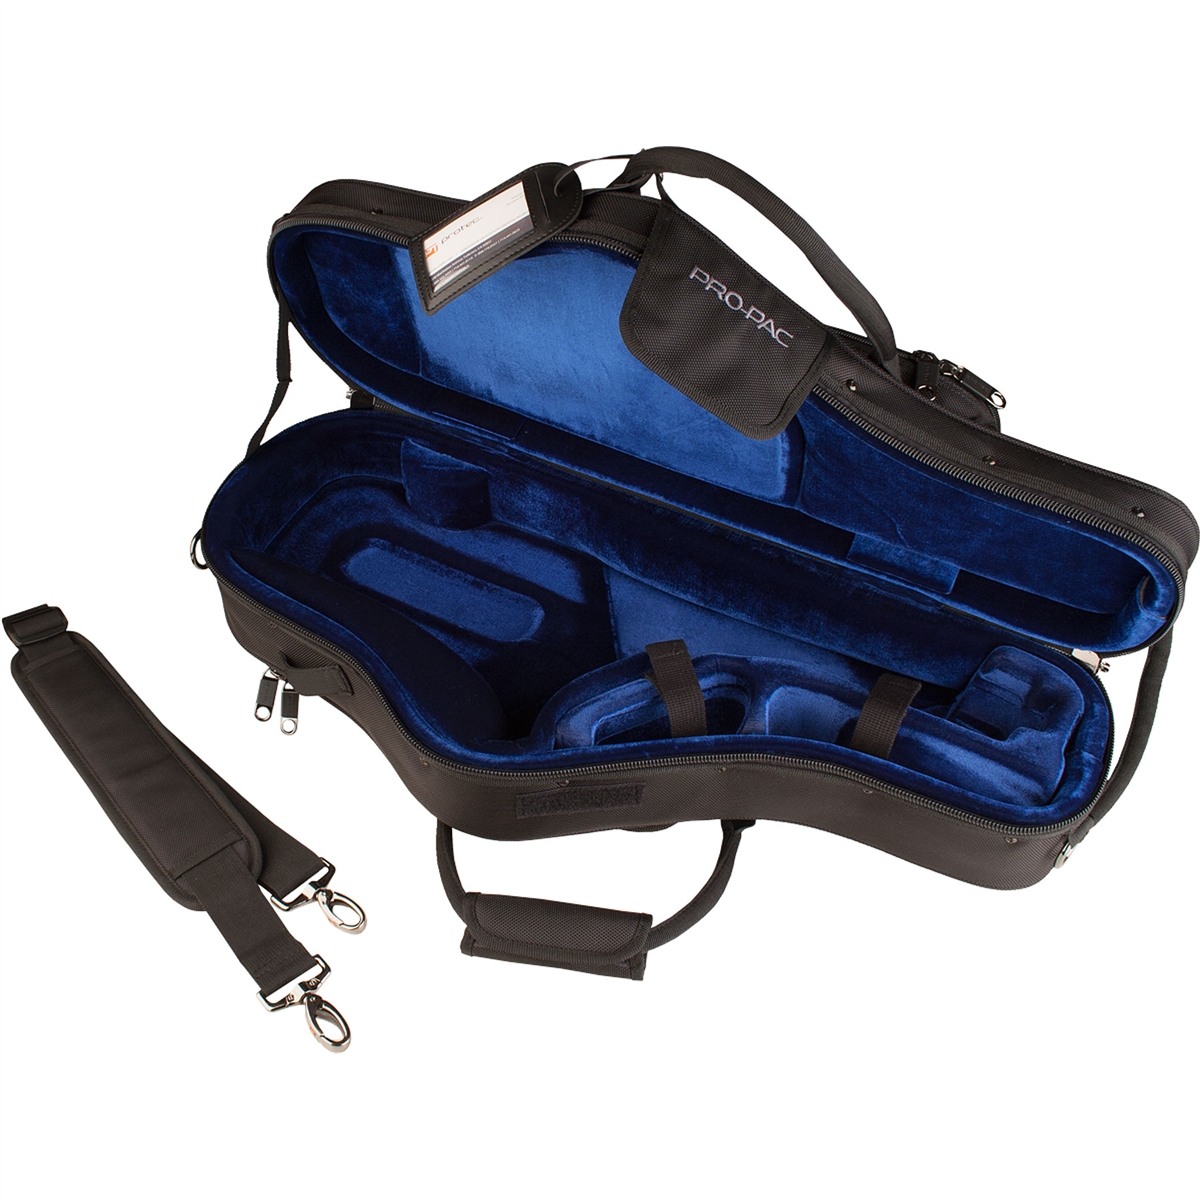 Protec PB304CT Koffer voor Altsaxofoon - Zwart